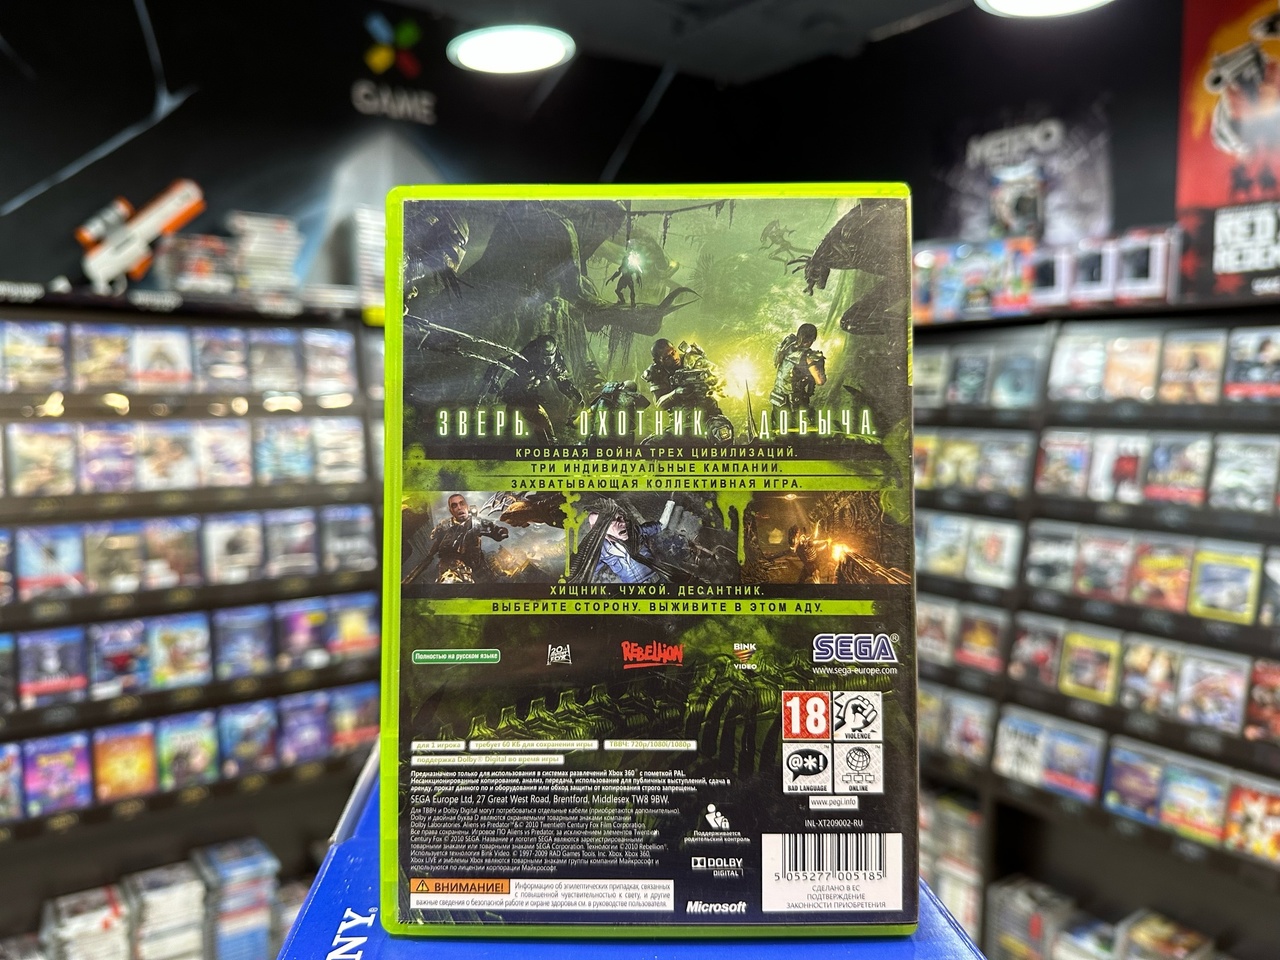 Aliens vs Predator (Xbox 360)